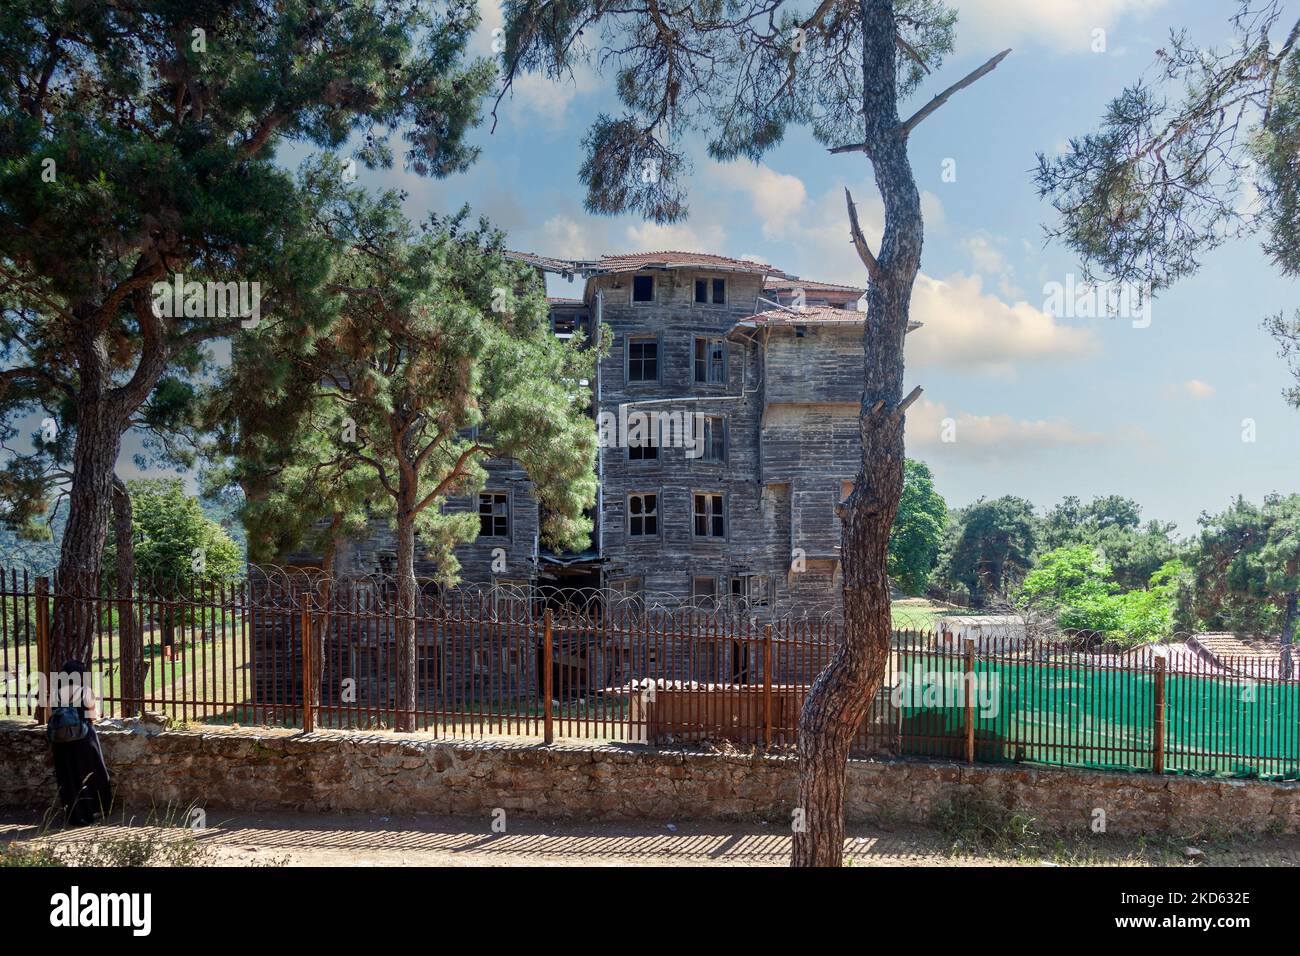 L'Orfanotrofio greco-ortodosso Prinkipo, uno storico edificio in legno di 20.000 metri quadrati sull'isola di Buyukada, la più grande delle isole dei principi, in Turchia Foto Stock